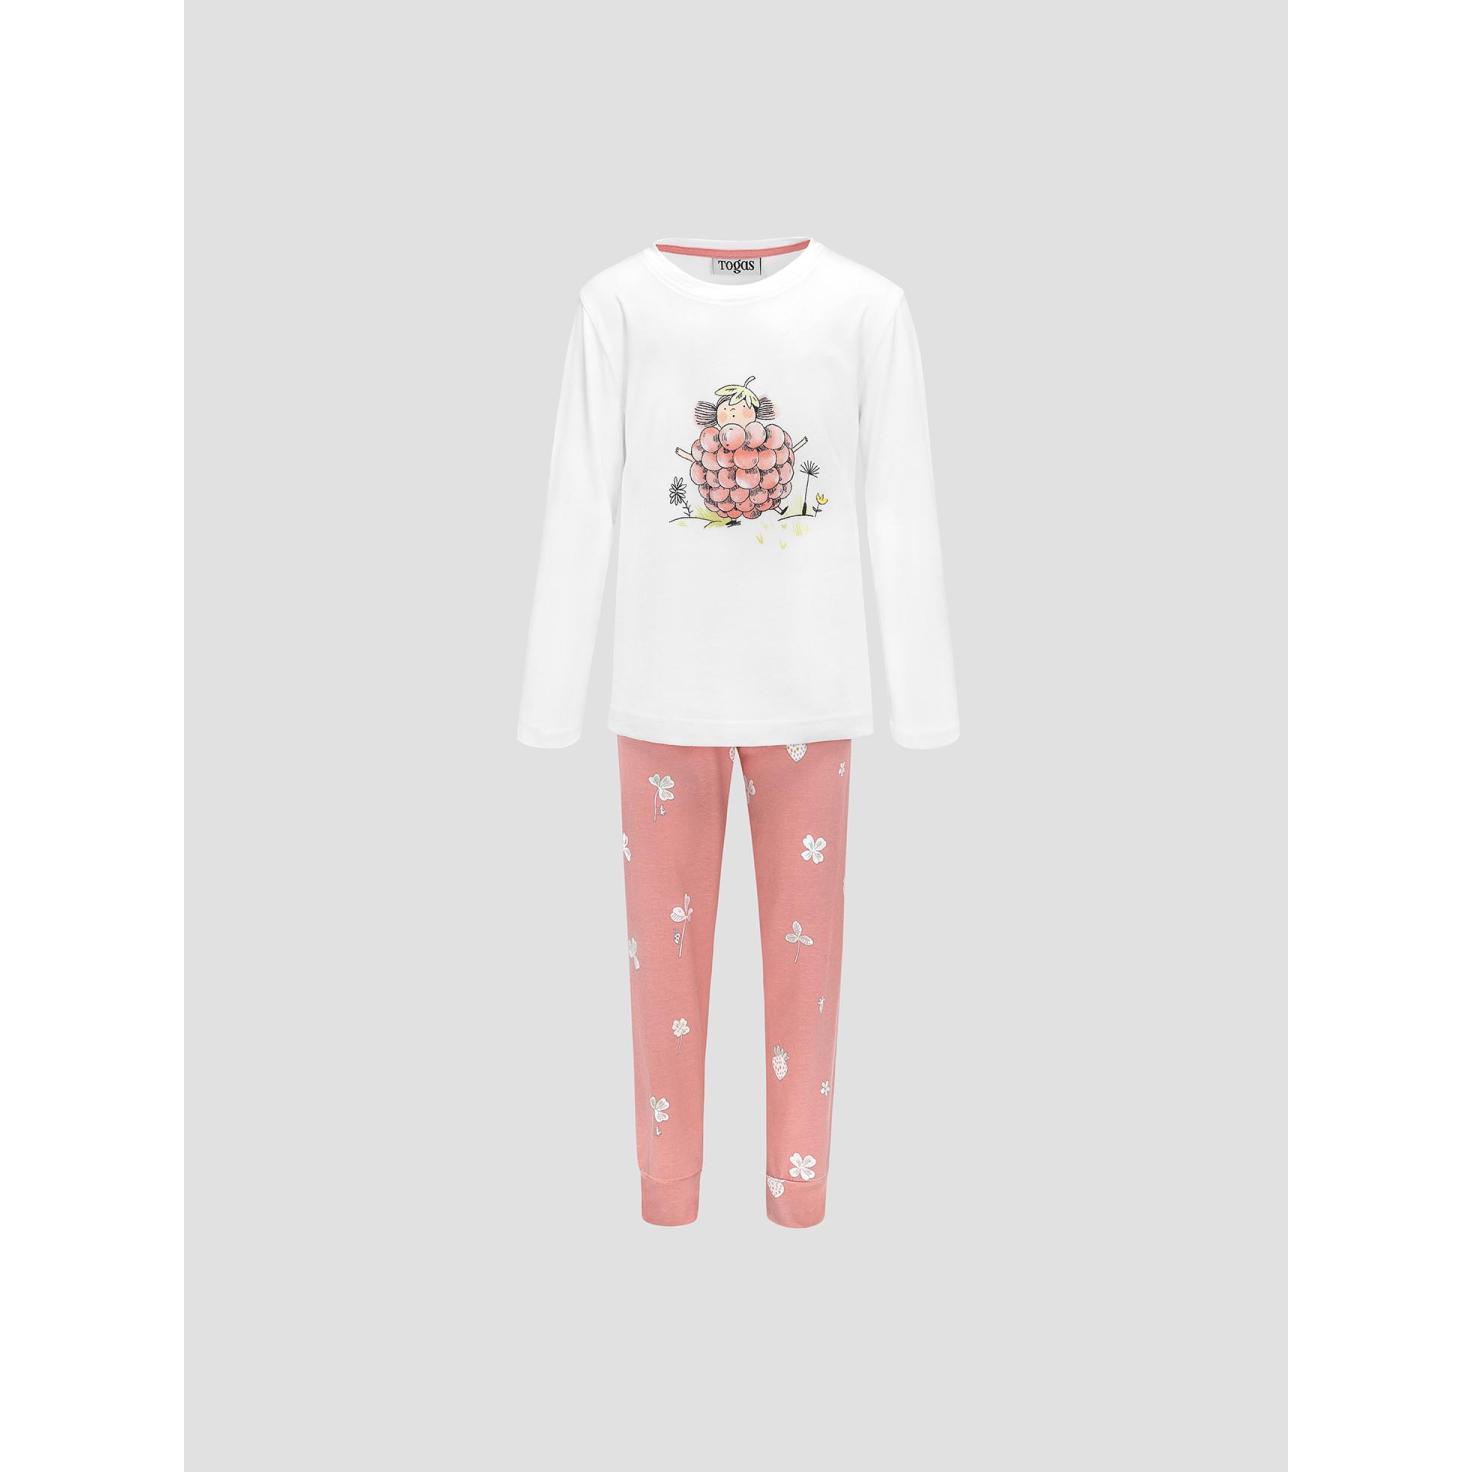 Пижама для девочек Kids by togas Стробби бело-розовый 116-122 см жен пижама с шортами инь янь белый р 48